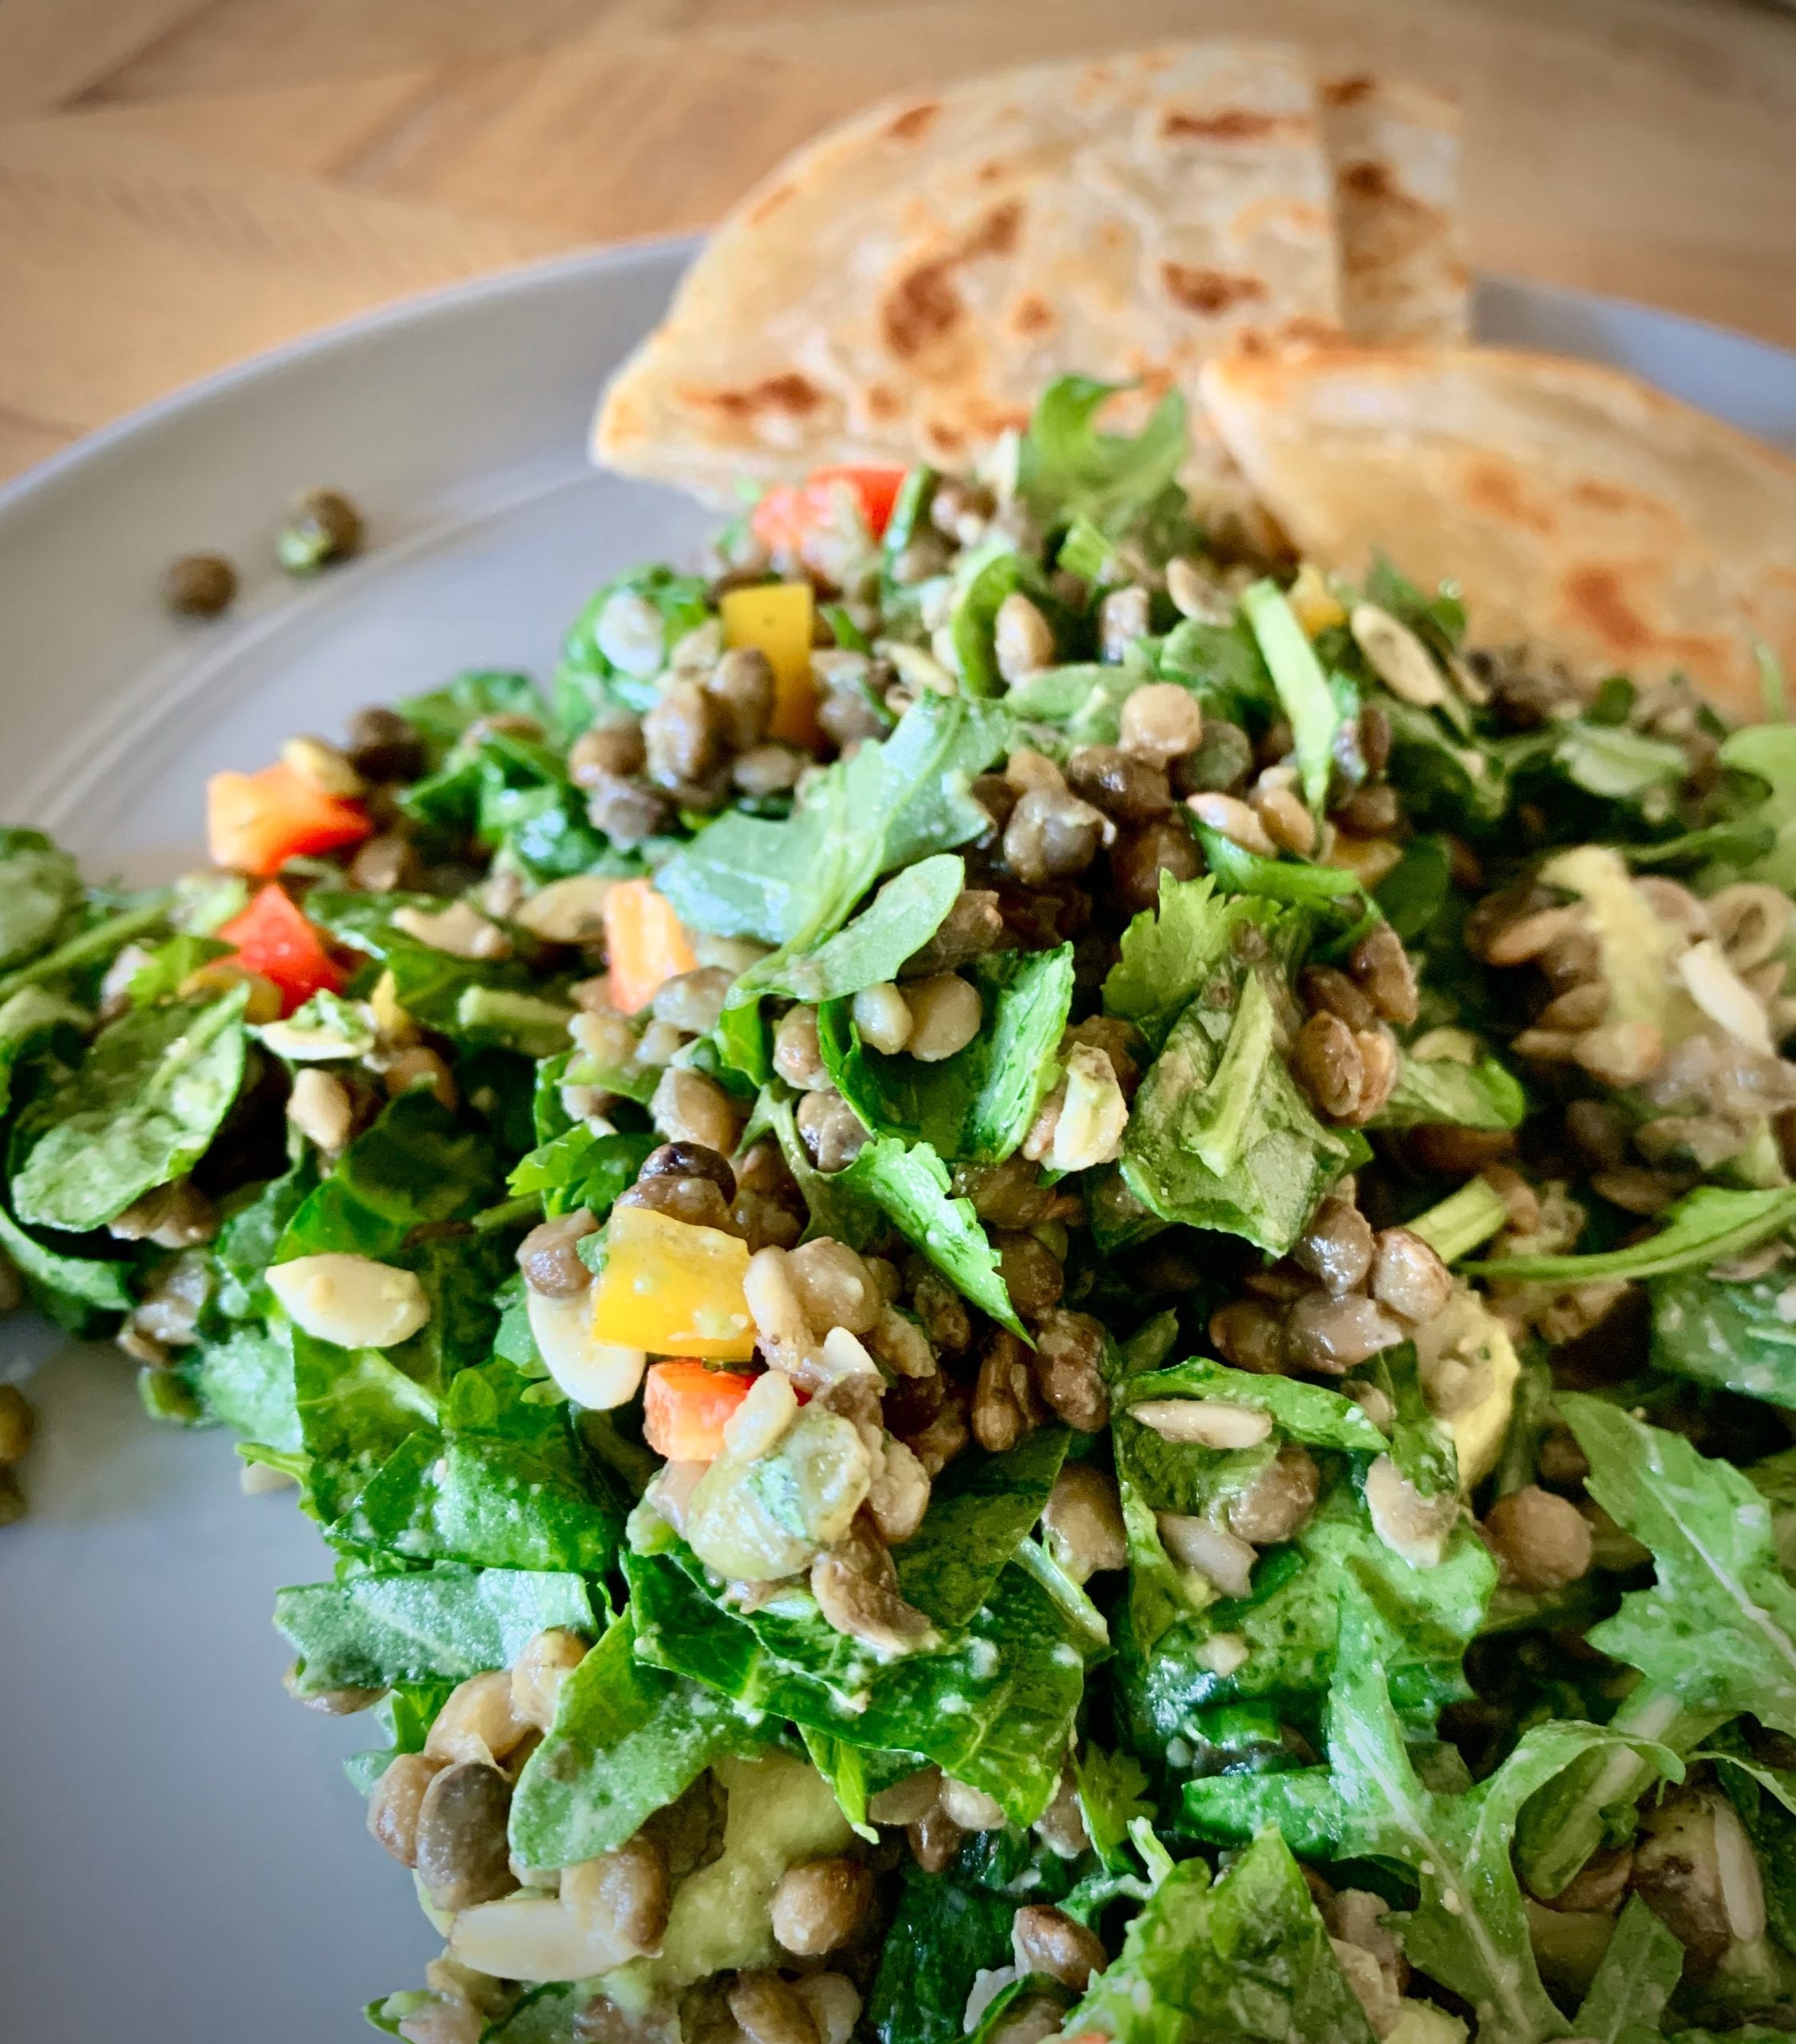 vegan salad recipe, lentil salad, the best lentil salad, taco salad, salad recipes, healthy salad recipes, healthy taco salad recipe, lentil recipes, vegan recipes